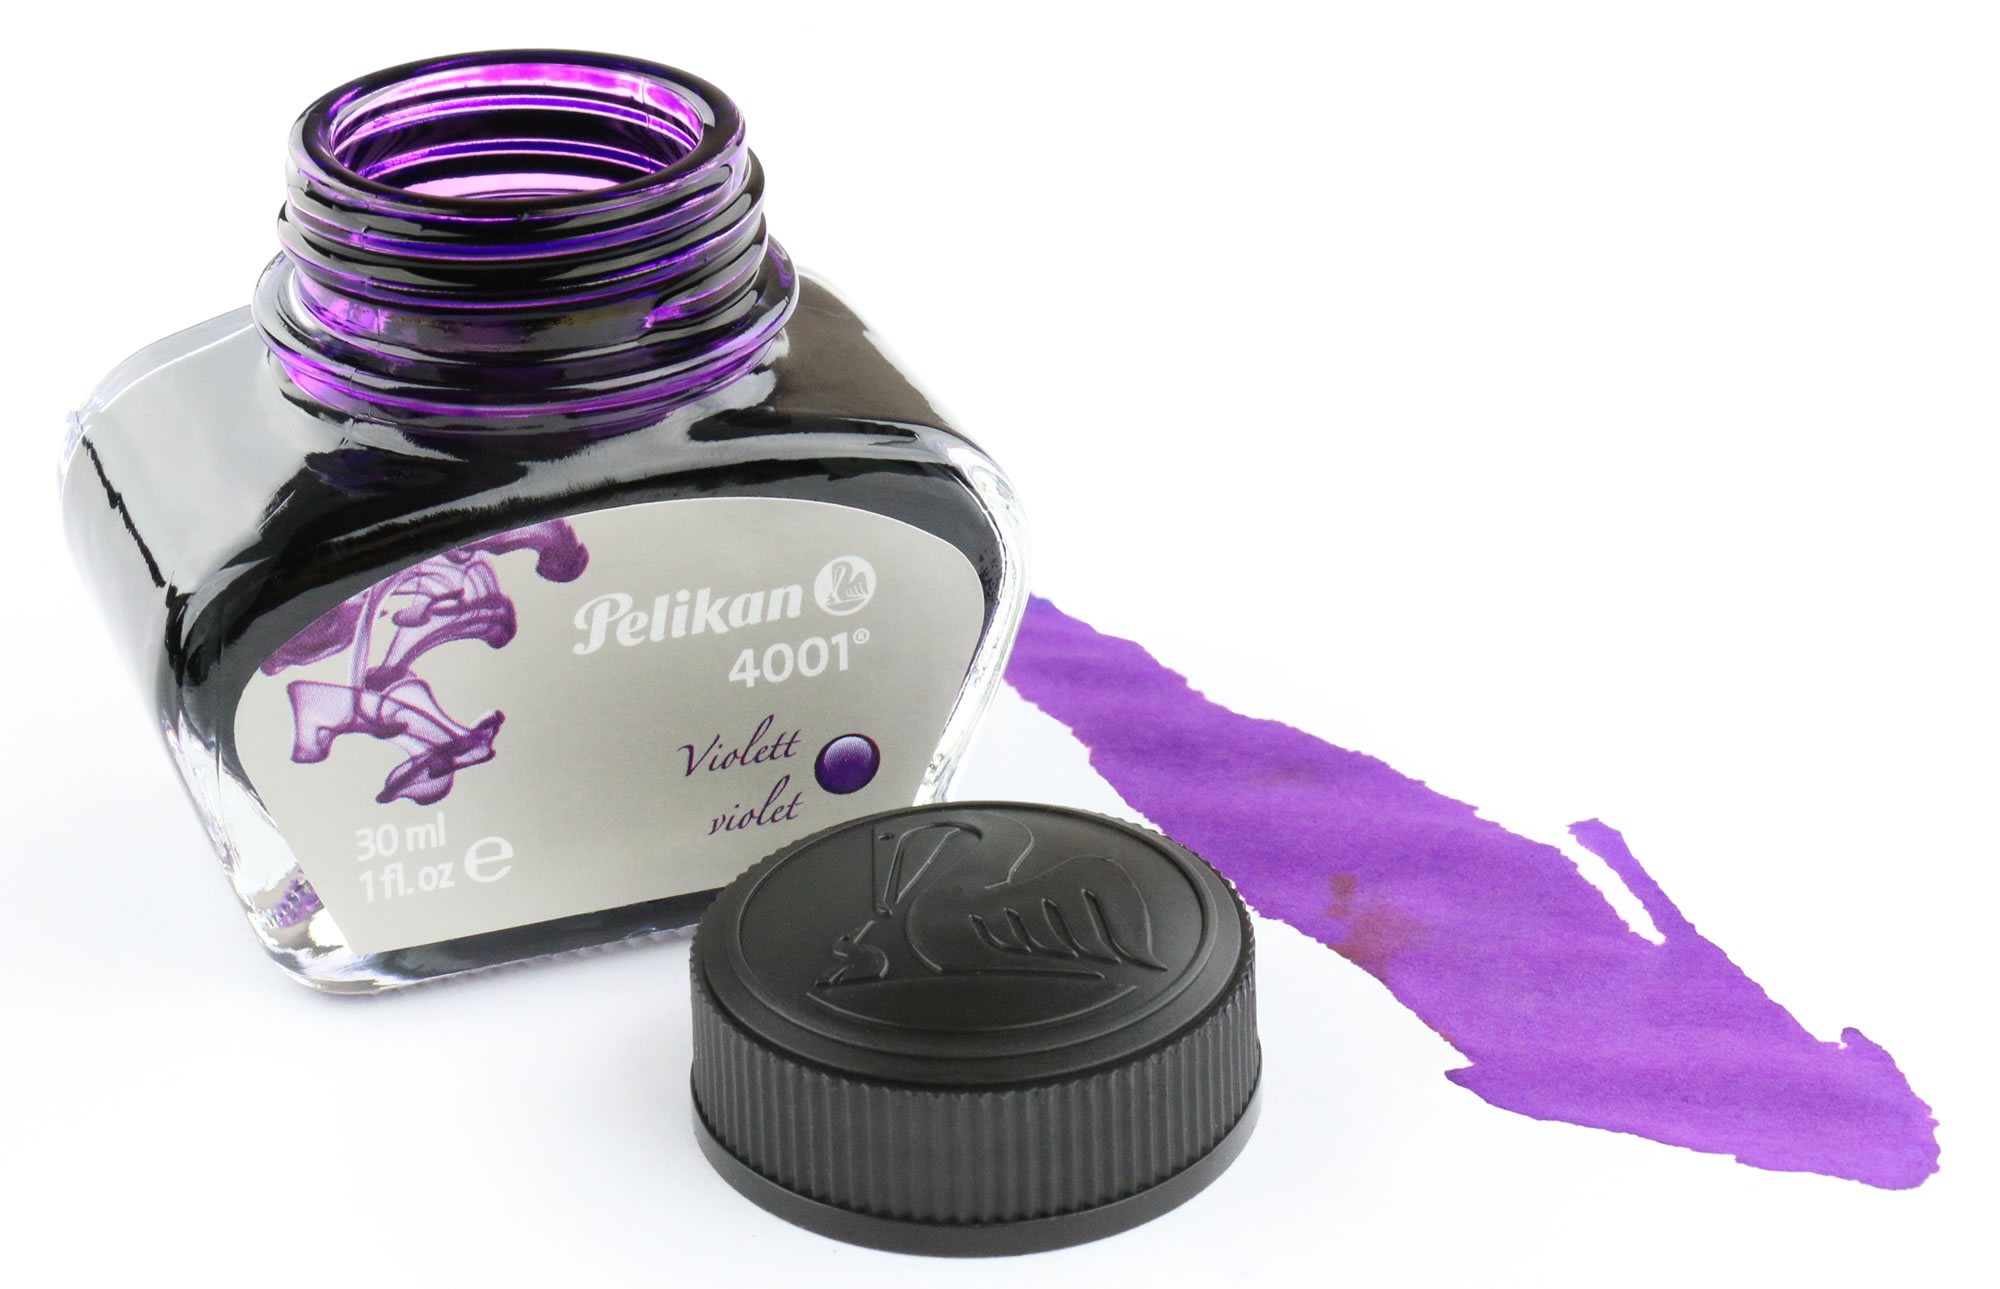 Collega Huiswerk maken Vervagen Pen Chalet Ink Review & Giveaway: Pelikan 4001 Violet Ink - Pen Chalet